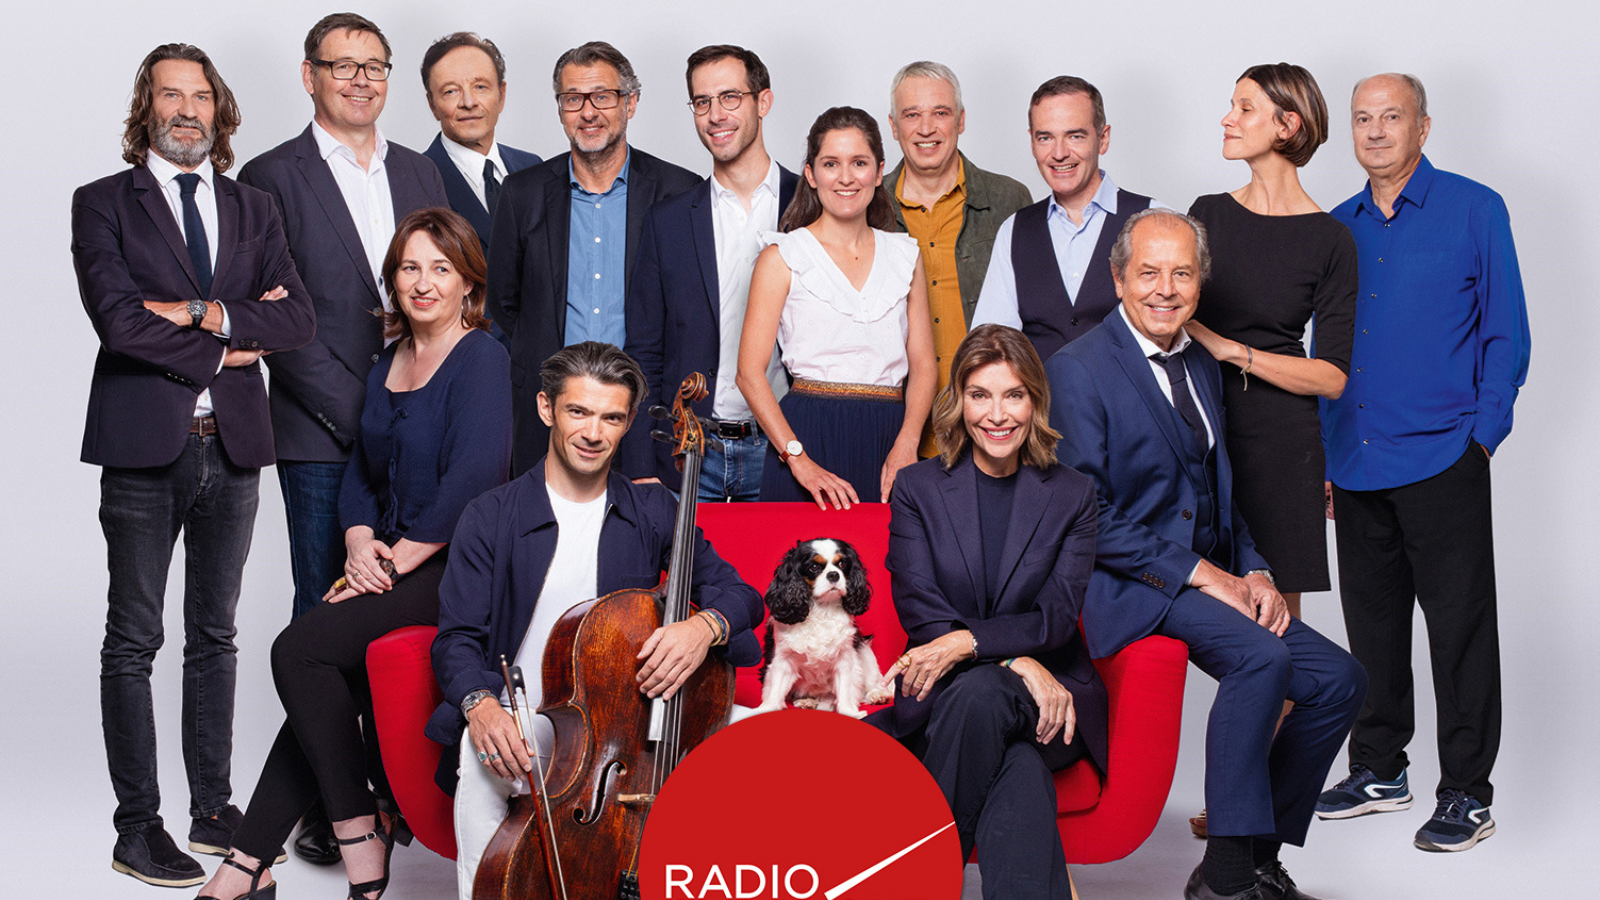 Radio Classique conclut une saison record sur l’ensemble des modes d’écoute